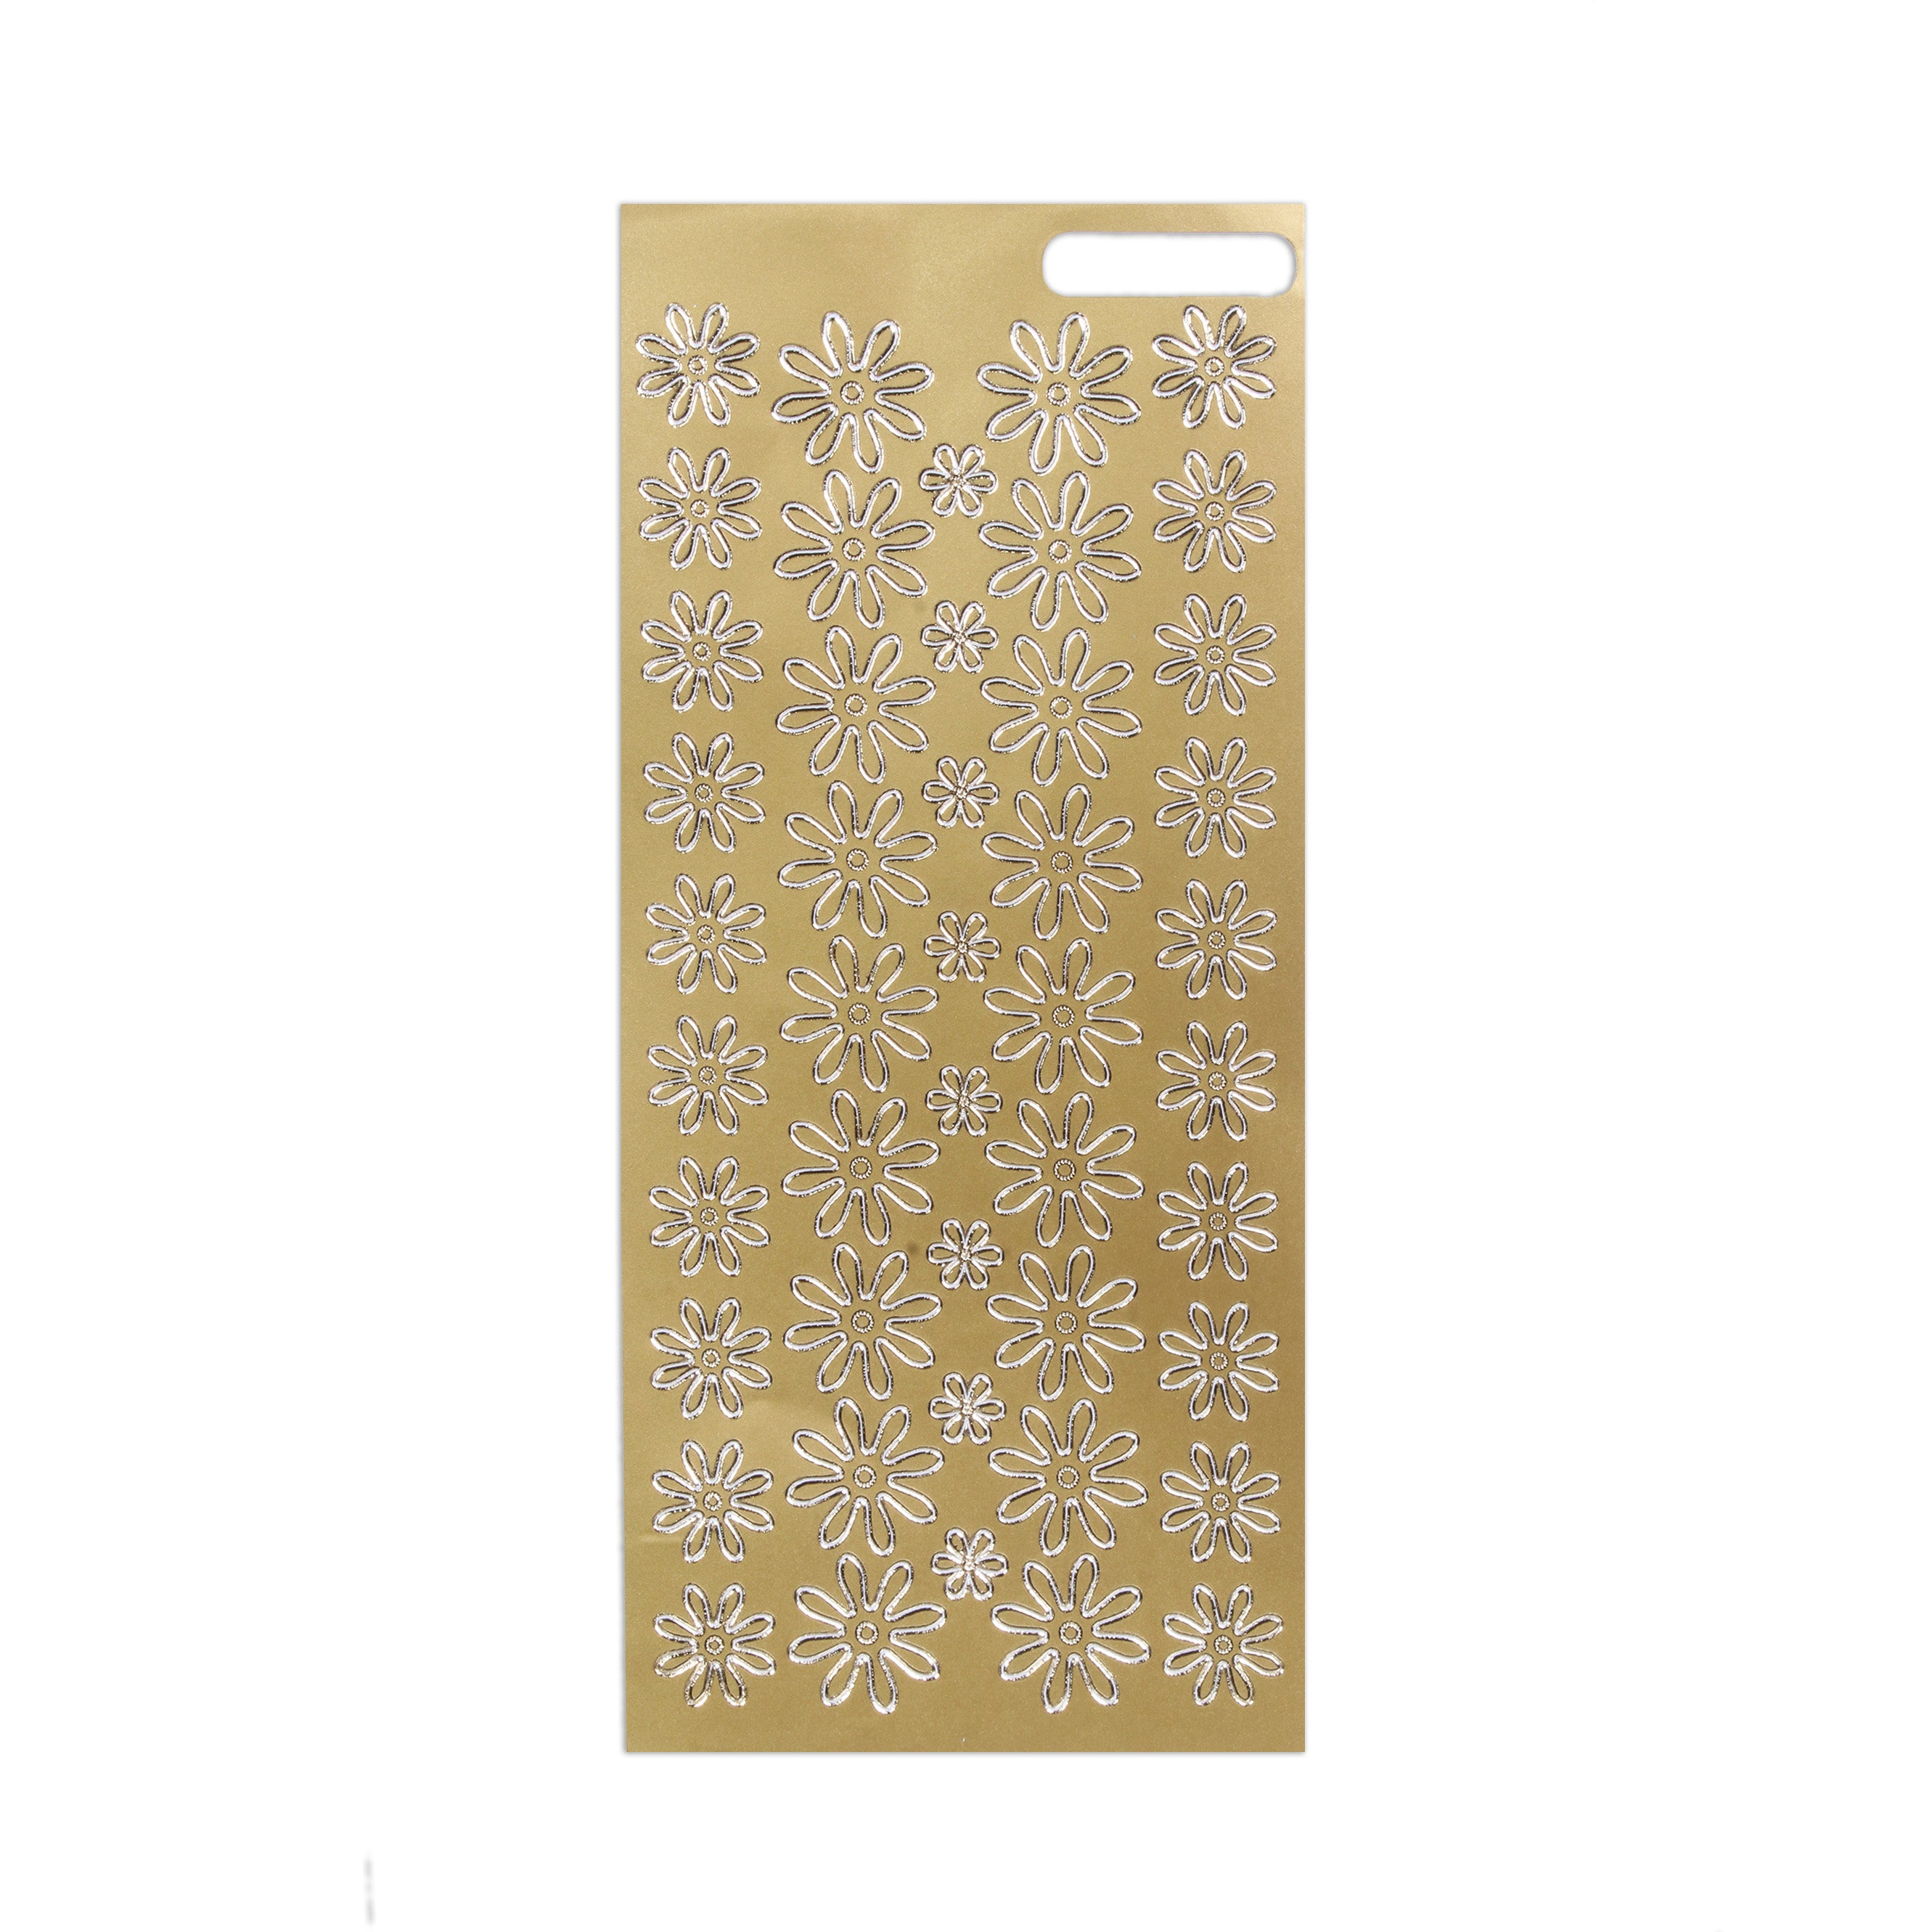 Foil Peel Off Sticker Daisies Golden 10 X 23cm 1Sheet